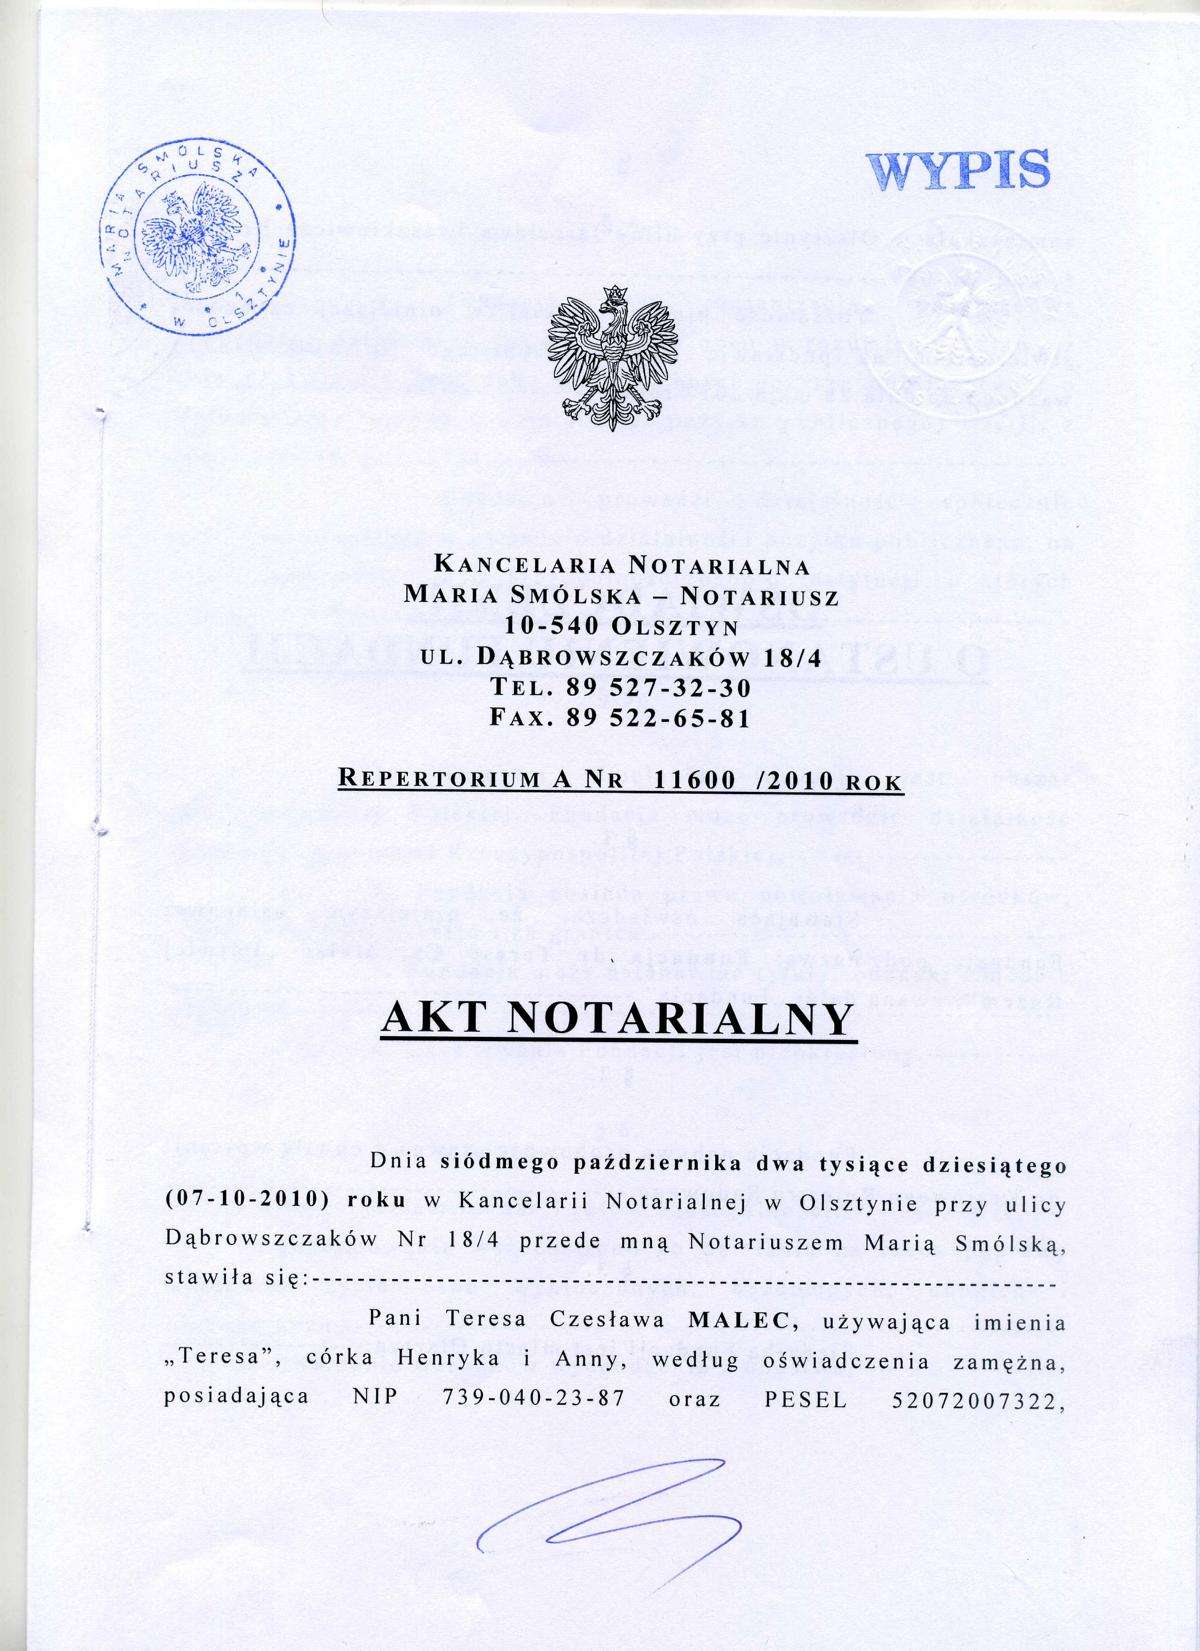 Akt notarialny "Łatwiej Razem"